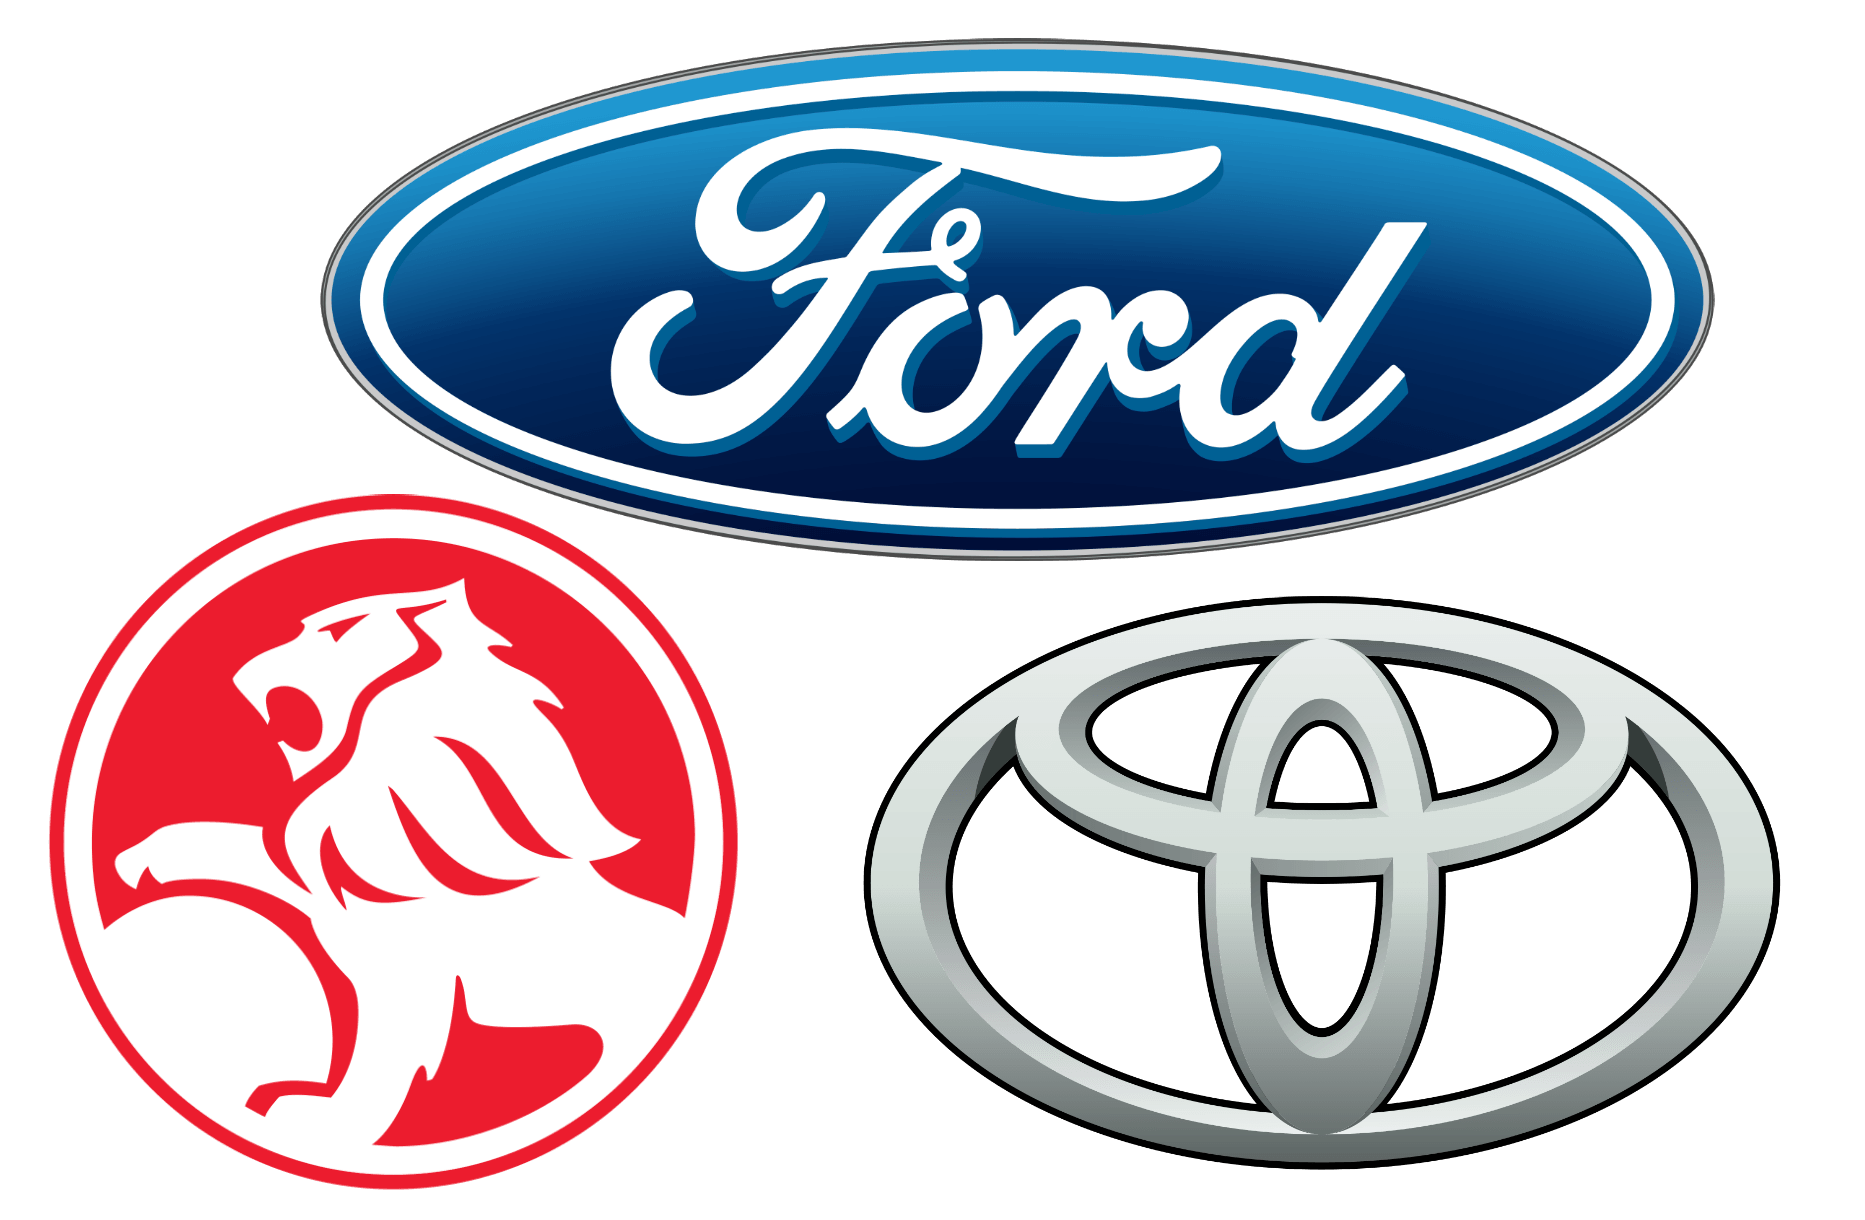 Foreign Company Logo - Australian Car Brands, Companies and Manufacturers | Car Brand Names.com